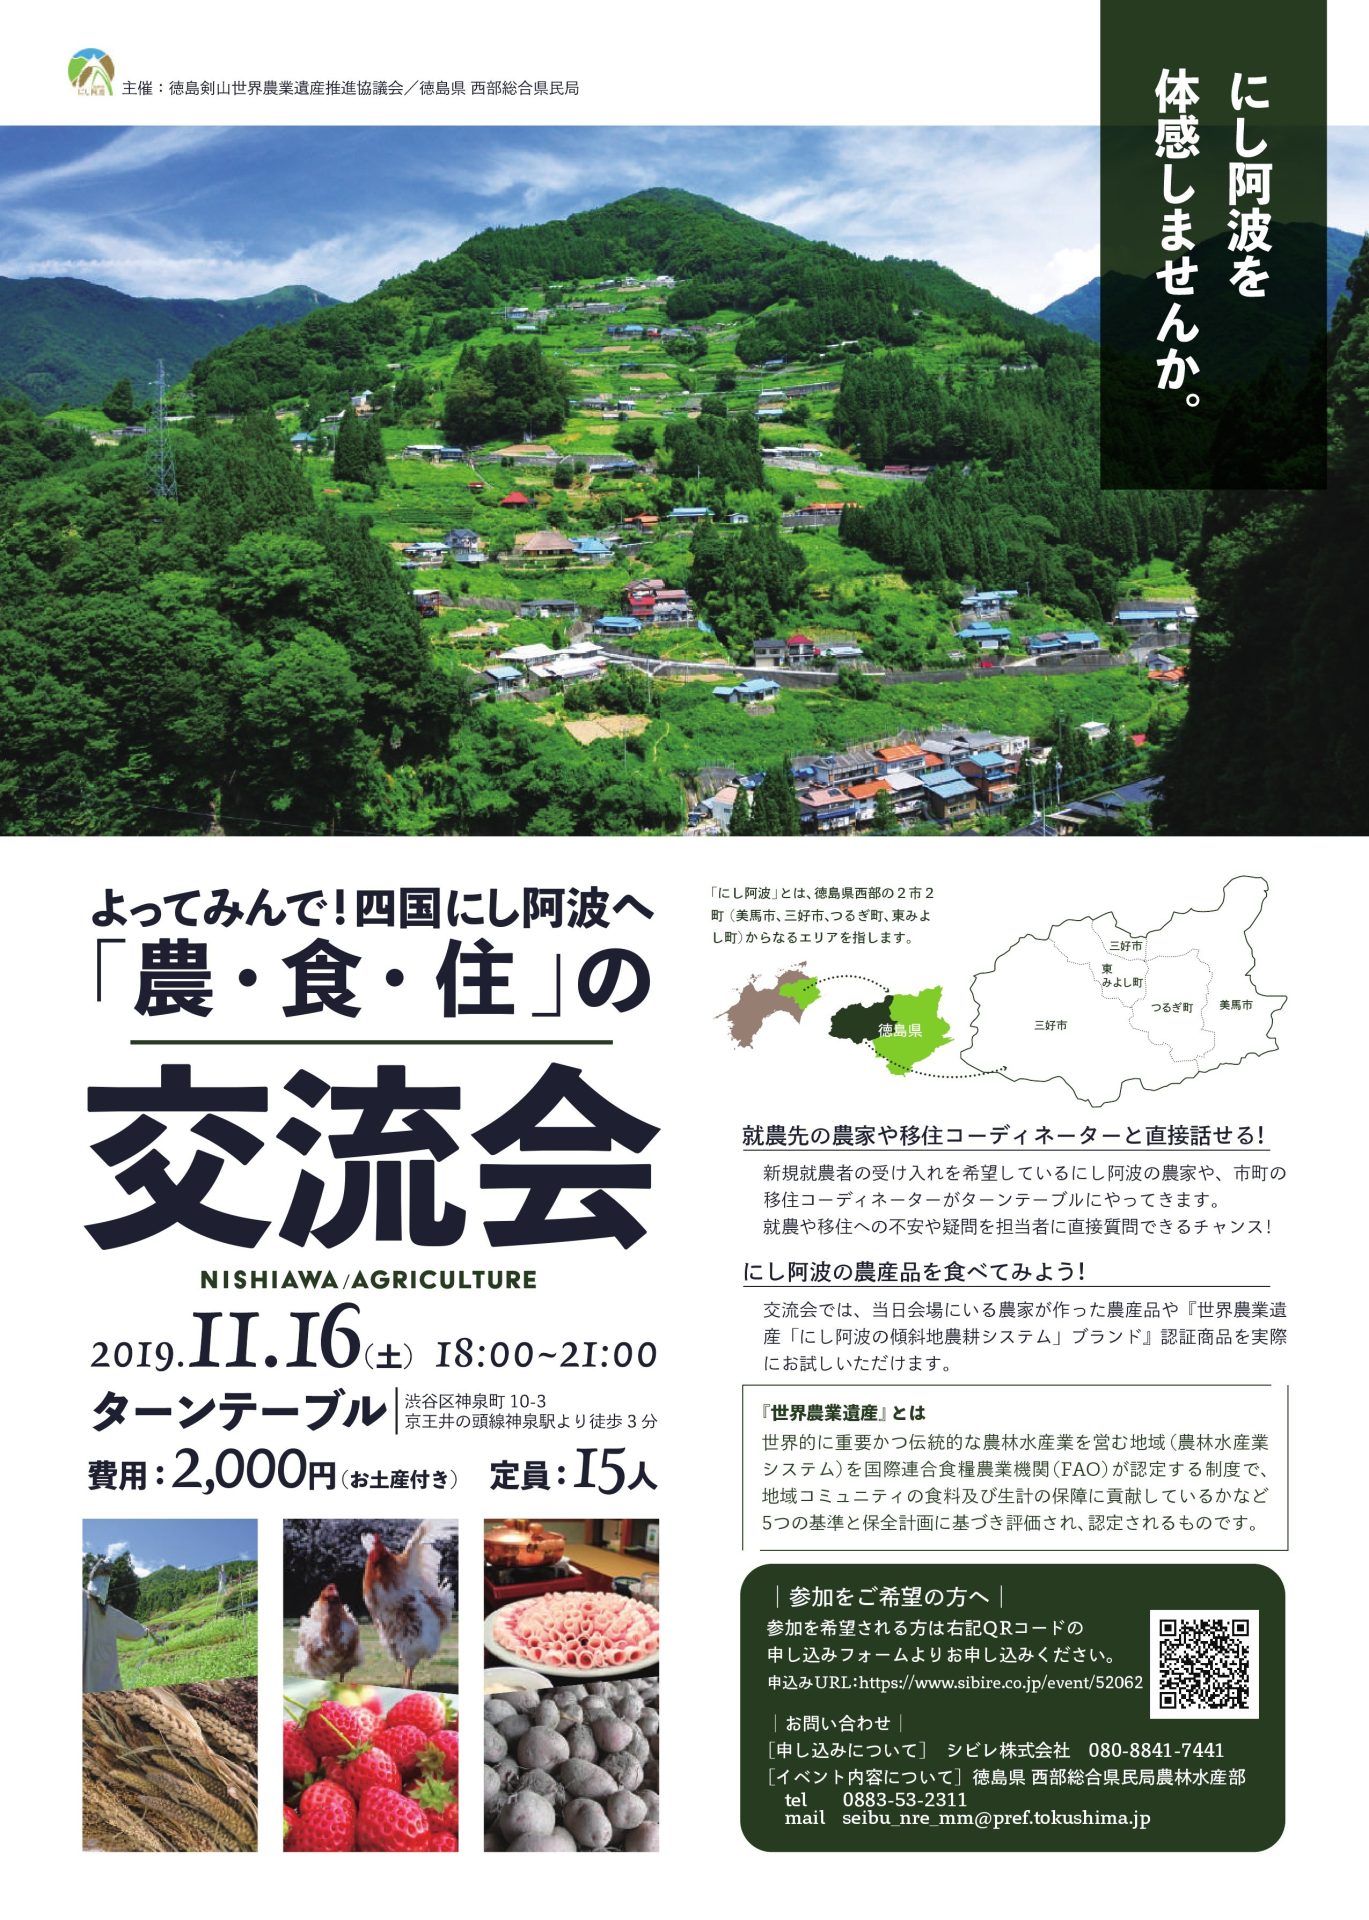 よってみんで！四国にし阿波へ「農・食・住」の交流会 | 移住関連イベント情報